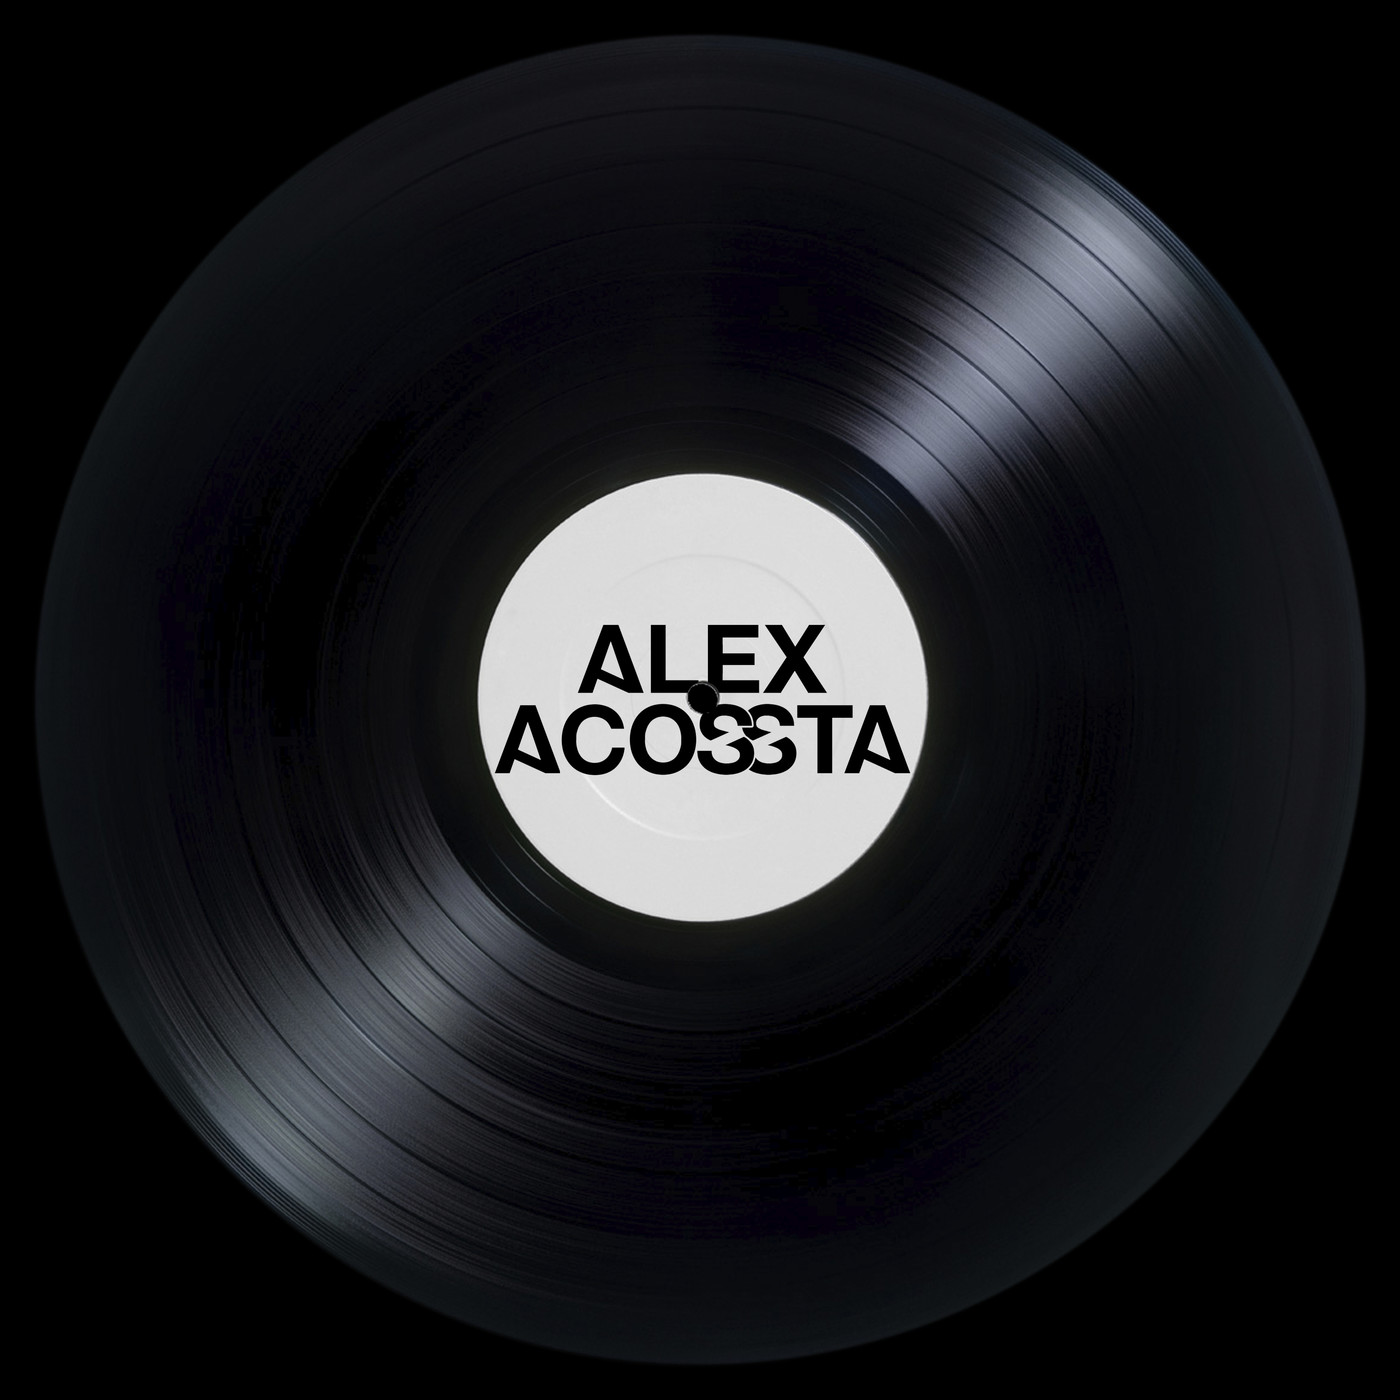 Alex Acossta - Promo Mix 7 Live @ [Studiobar] 2017 - House